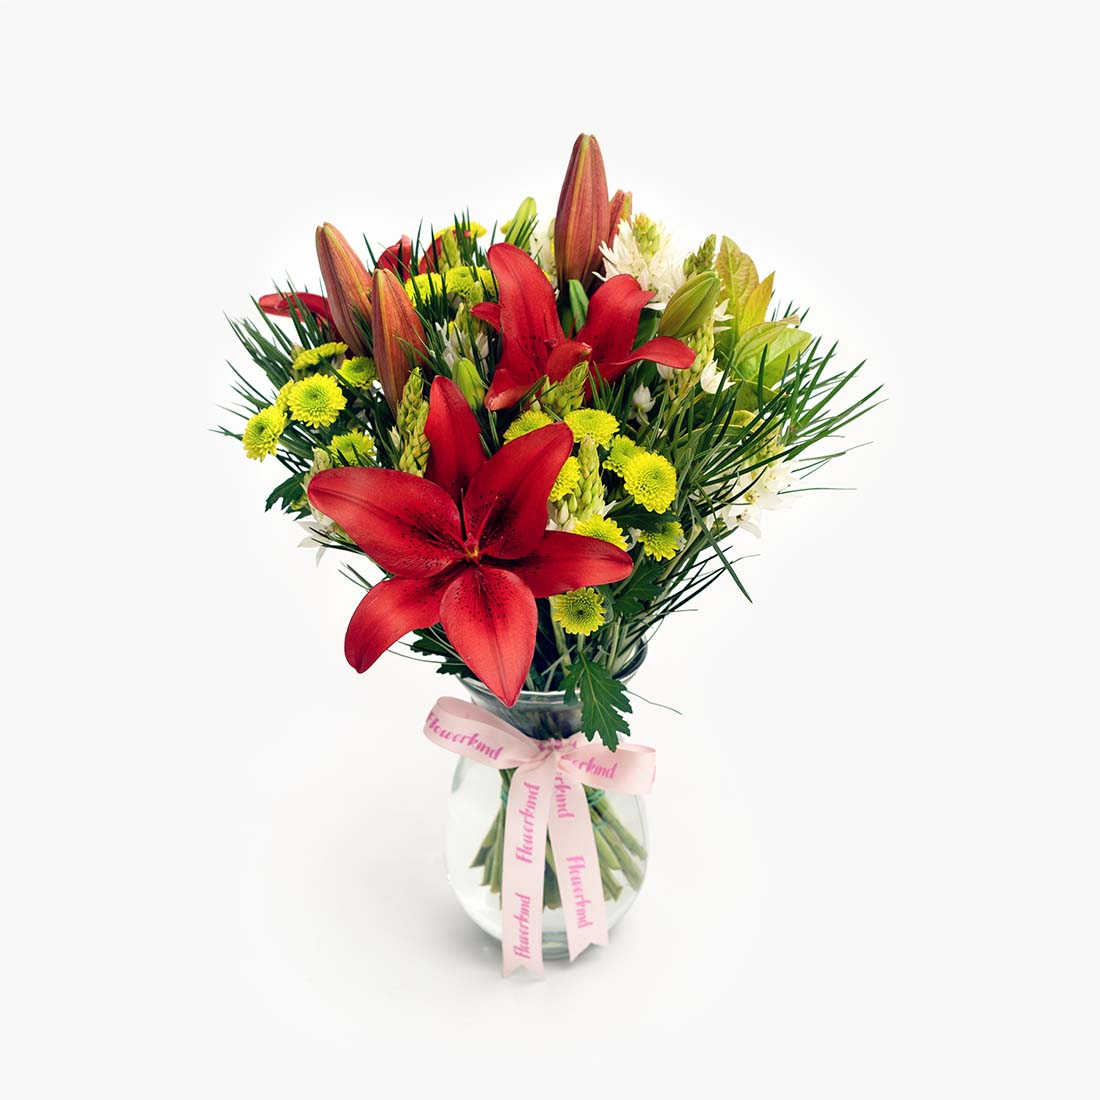 Geelong floristry Christmas themed flower arrangement